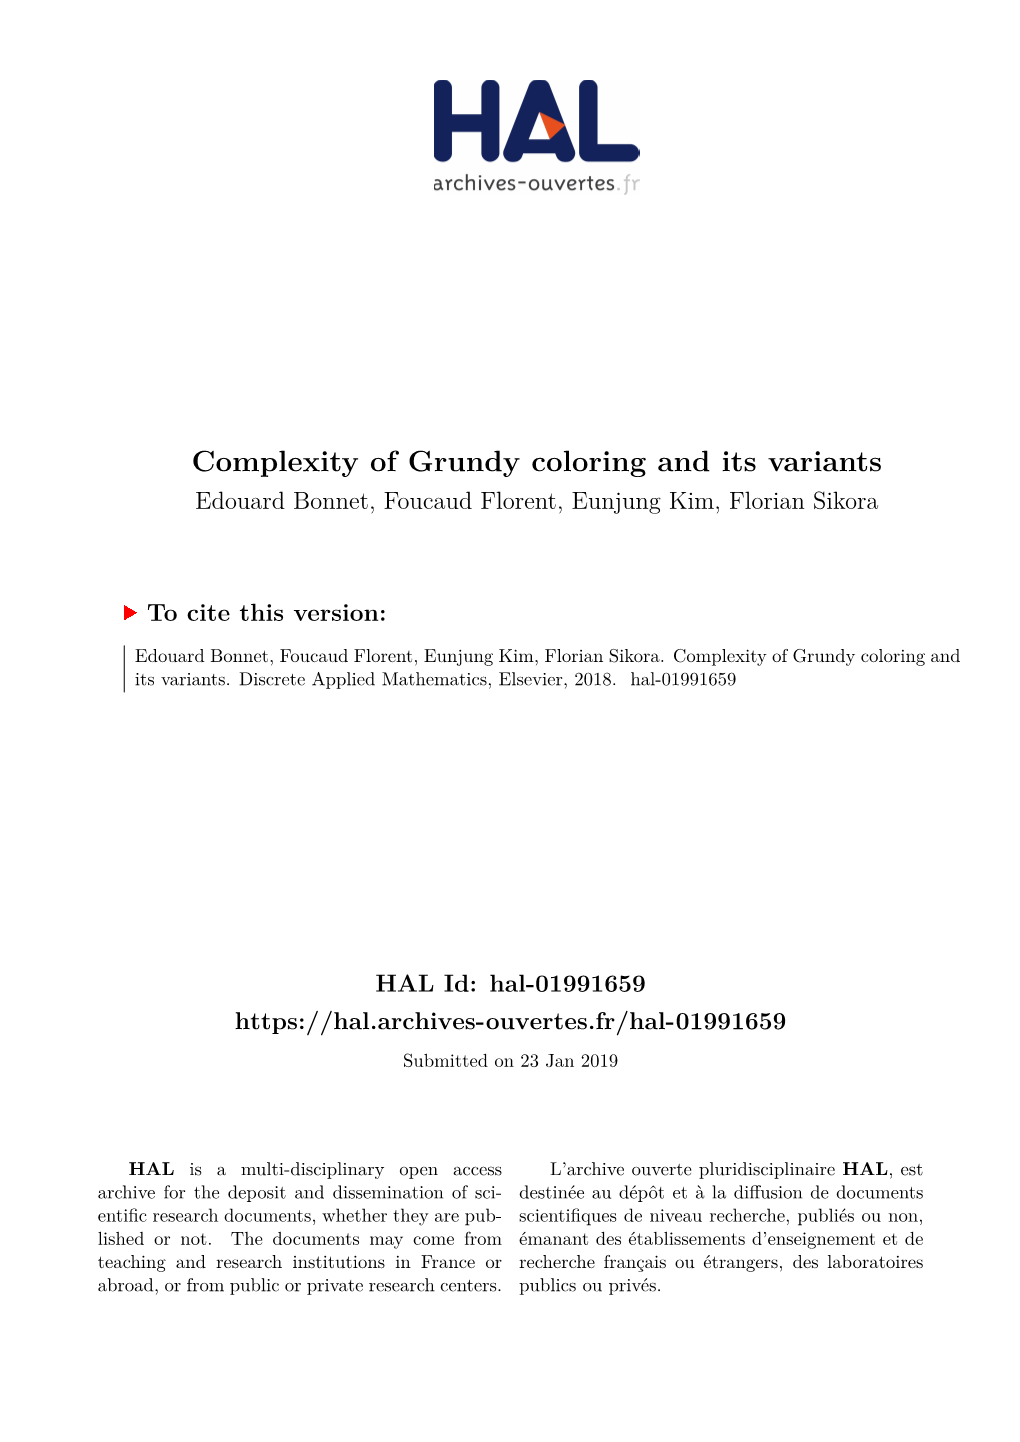 Complexity of Grundy Coloring and Its Variants Edouard Bonnet, Foucaud Florent, Eunjung Kim, Florian Sikora